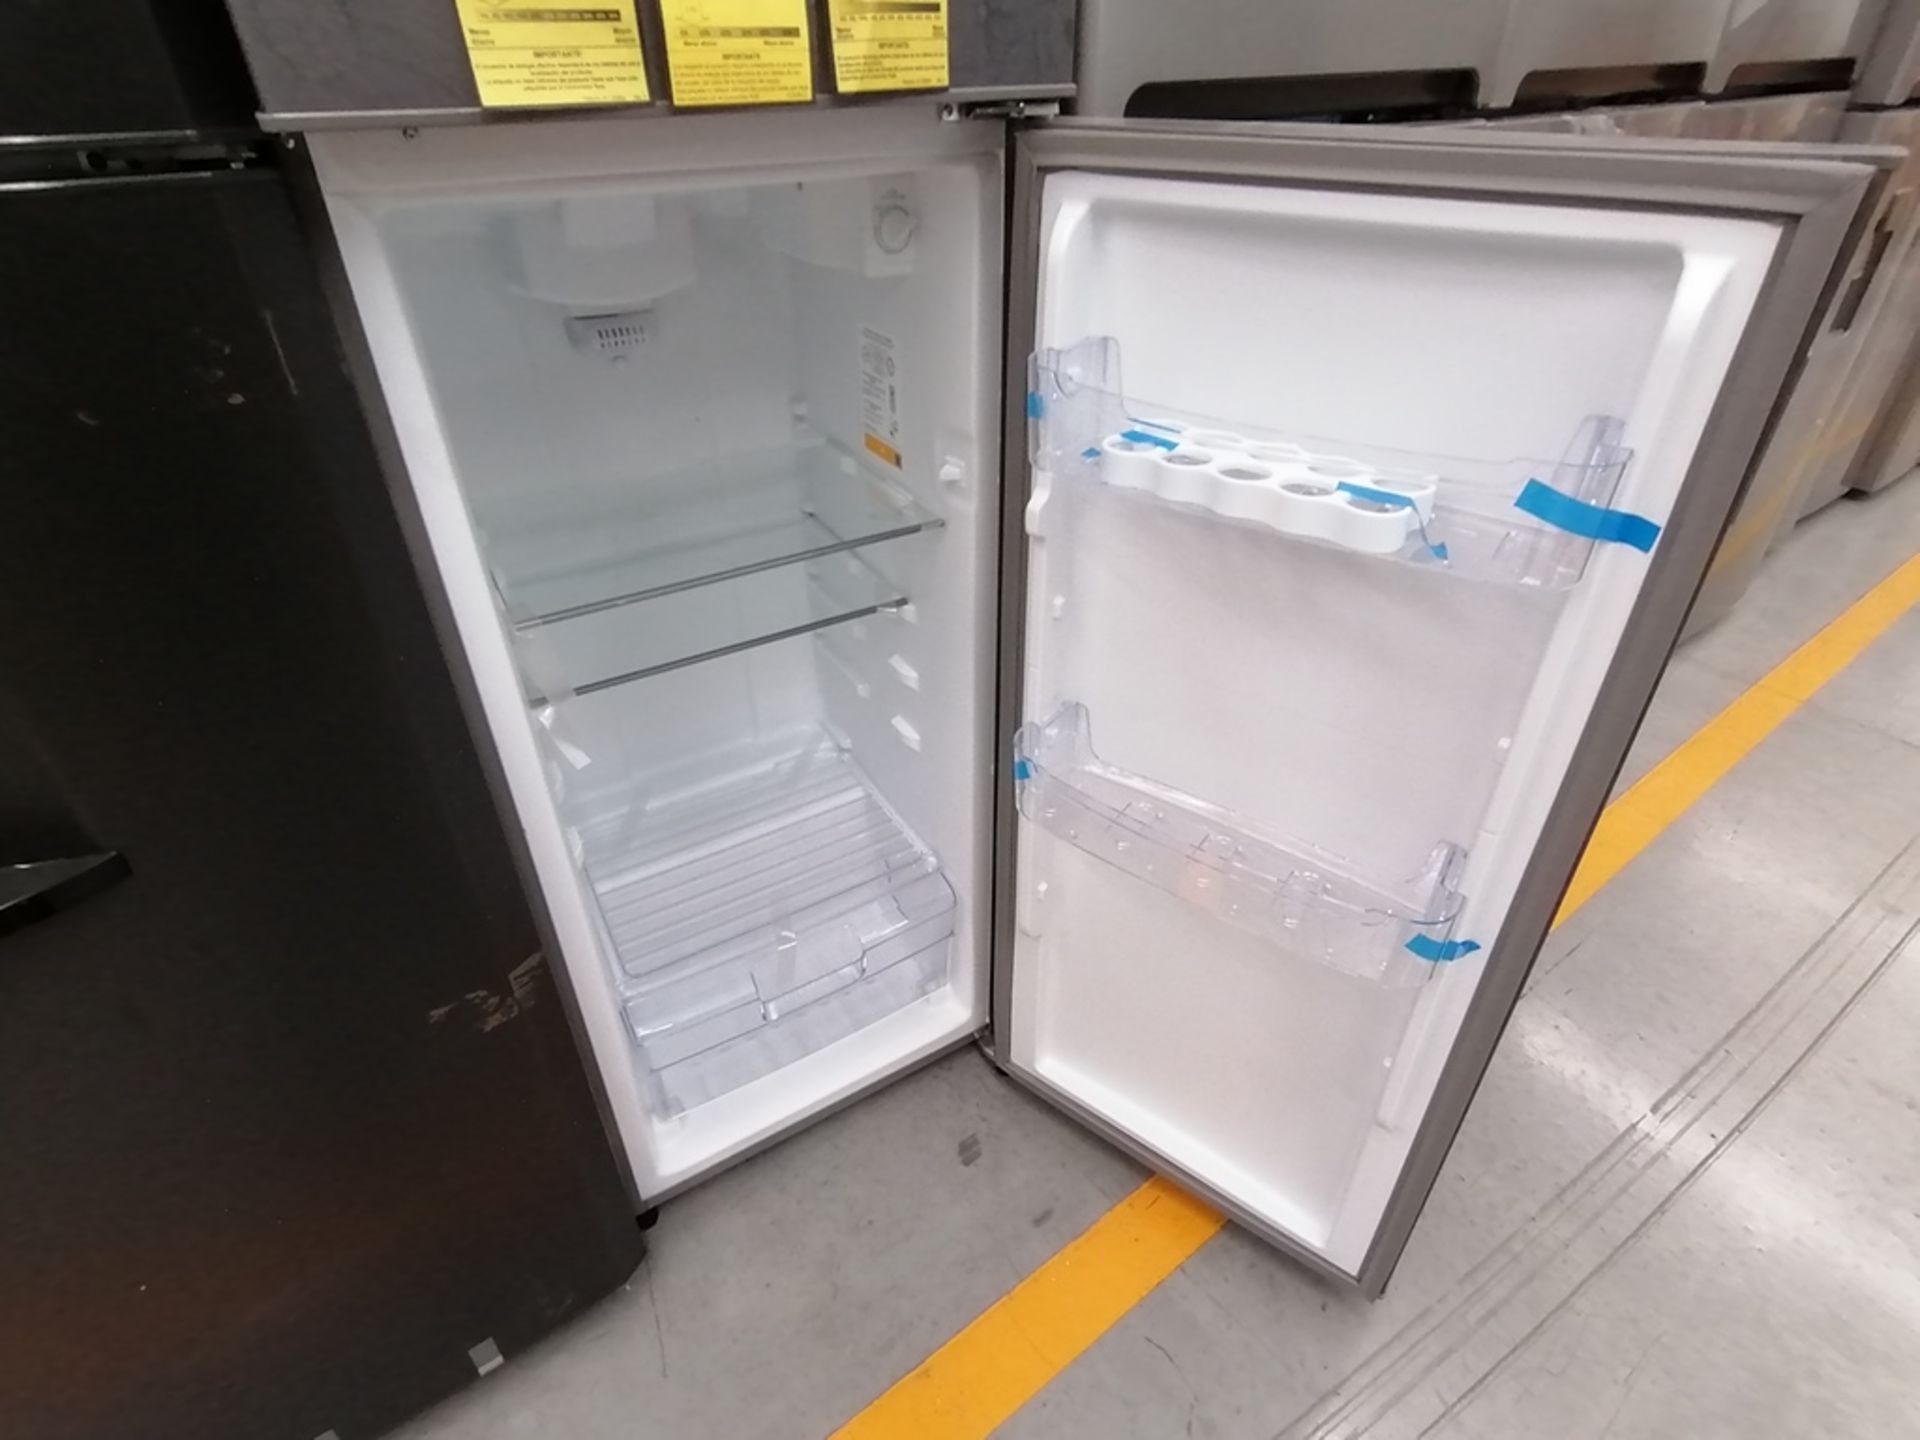 Lote de 2 Refrigeradores incluye: 1 Refrigerador, Marca Winia, Modelo DFR32210GNV, Serie MR217N104 - Image 12 of 15